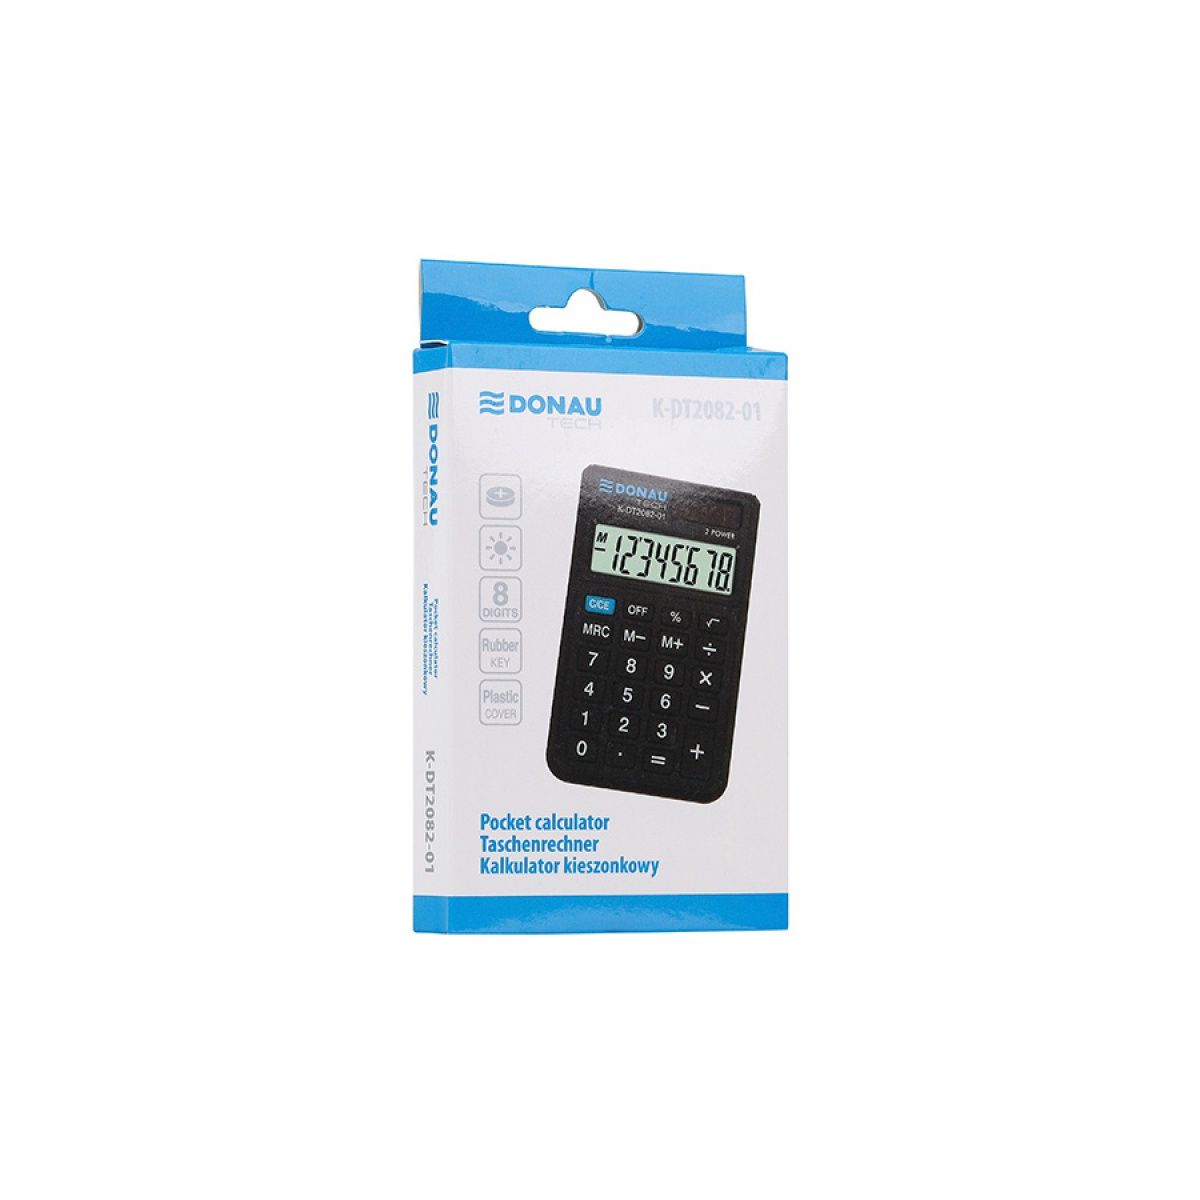 Kalkulator kieszonkowy Donau Tech (K-DT2082-01)